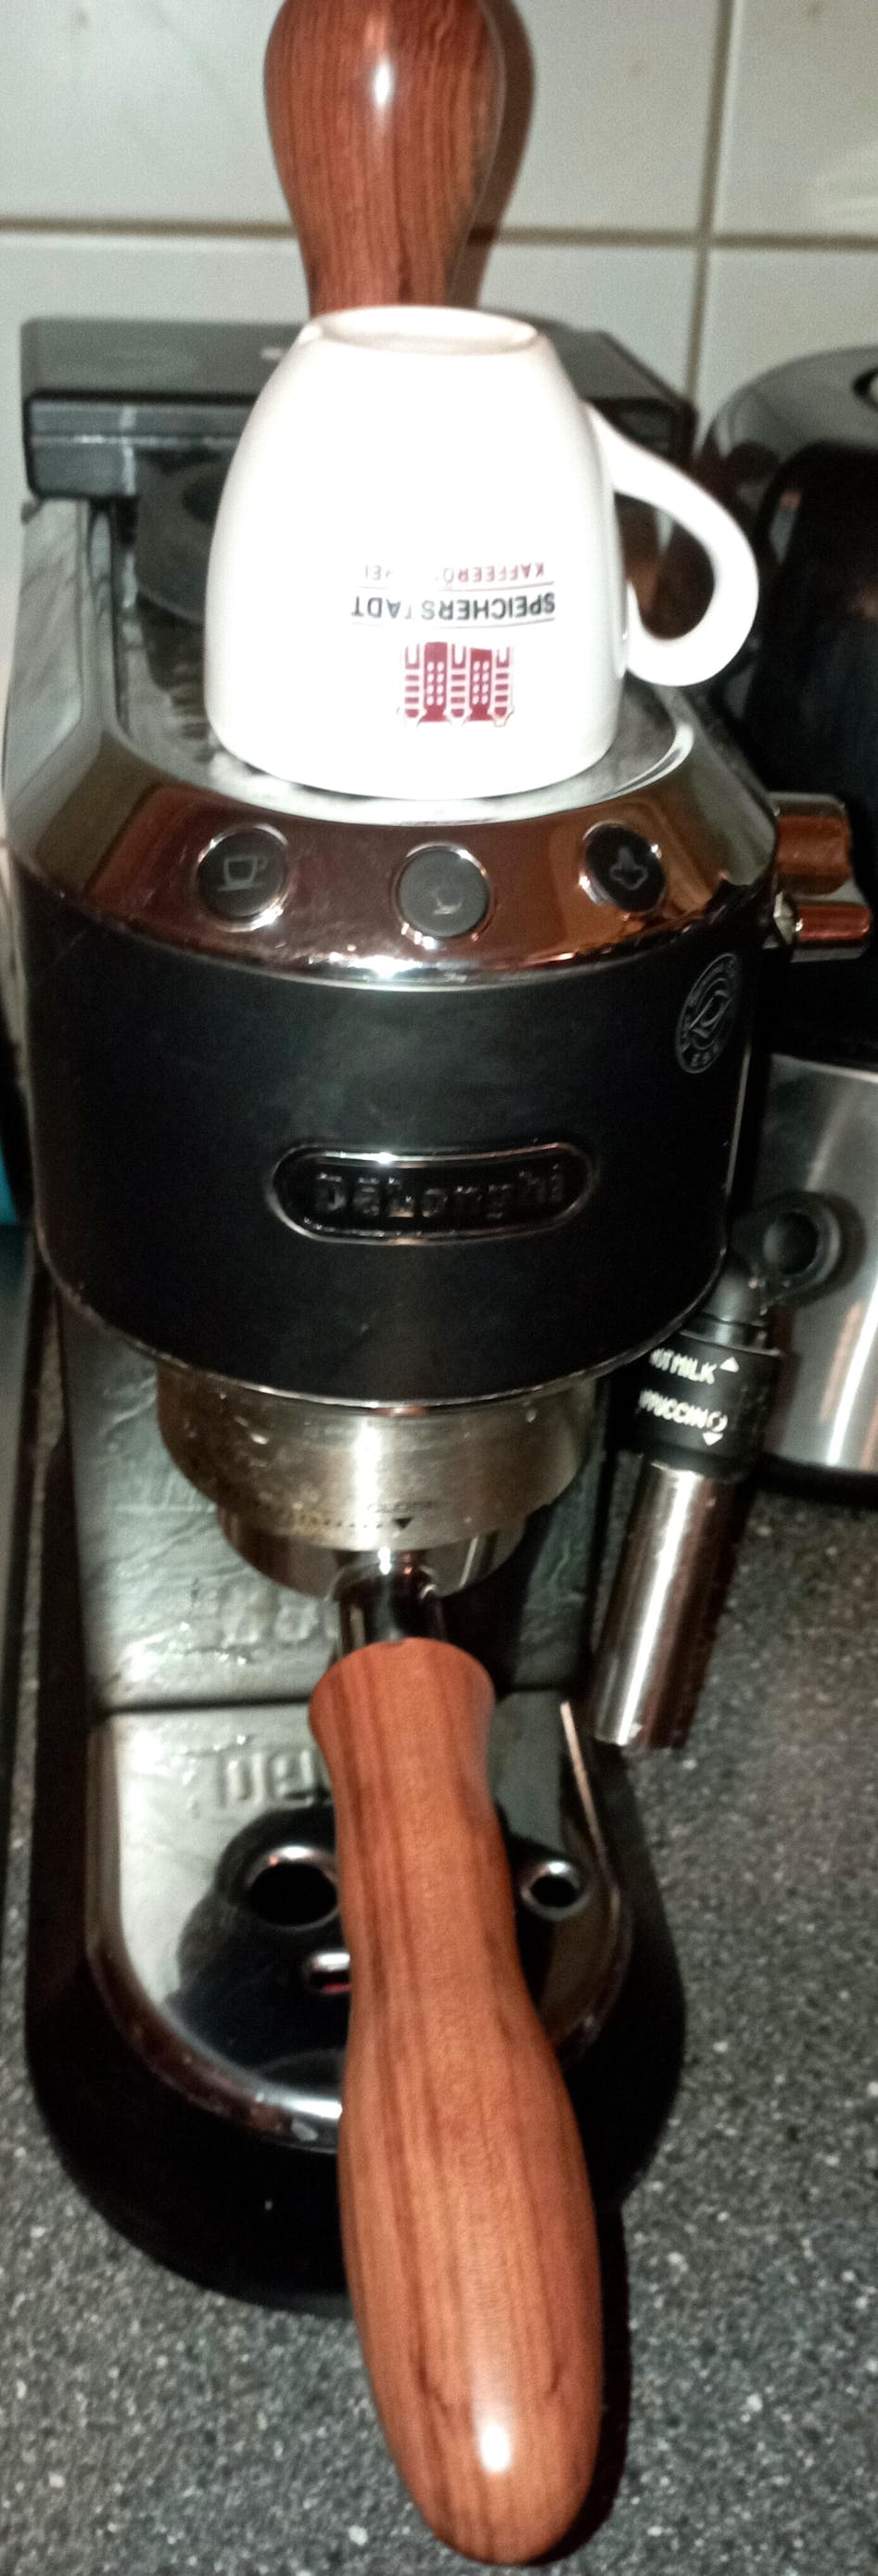 51mm Kaffee Bodenlose Siebträger Espressomaschine Griff Korb Kaffee  Werkzeuge für Ec680 / EC685, C